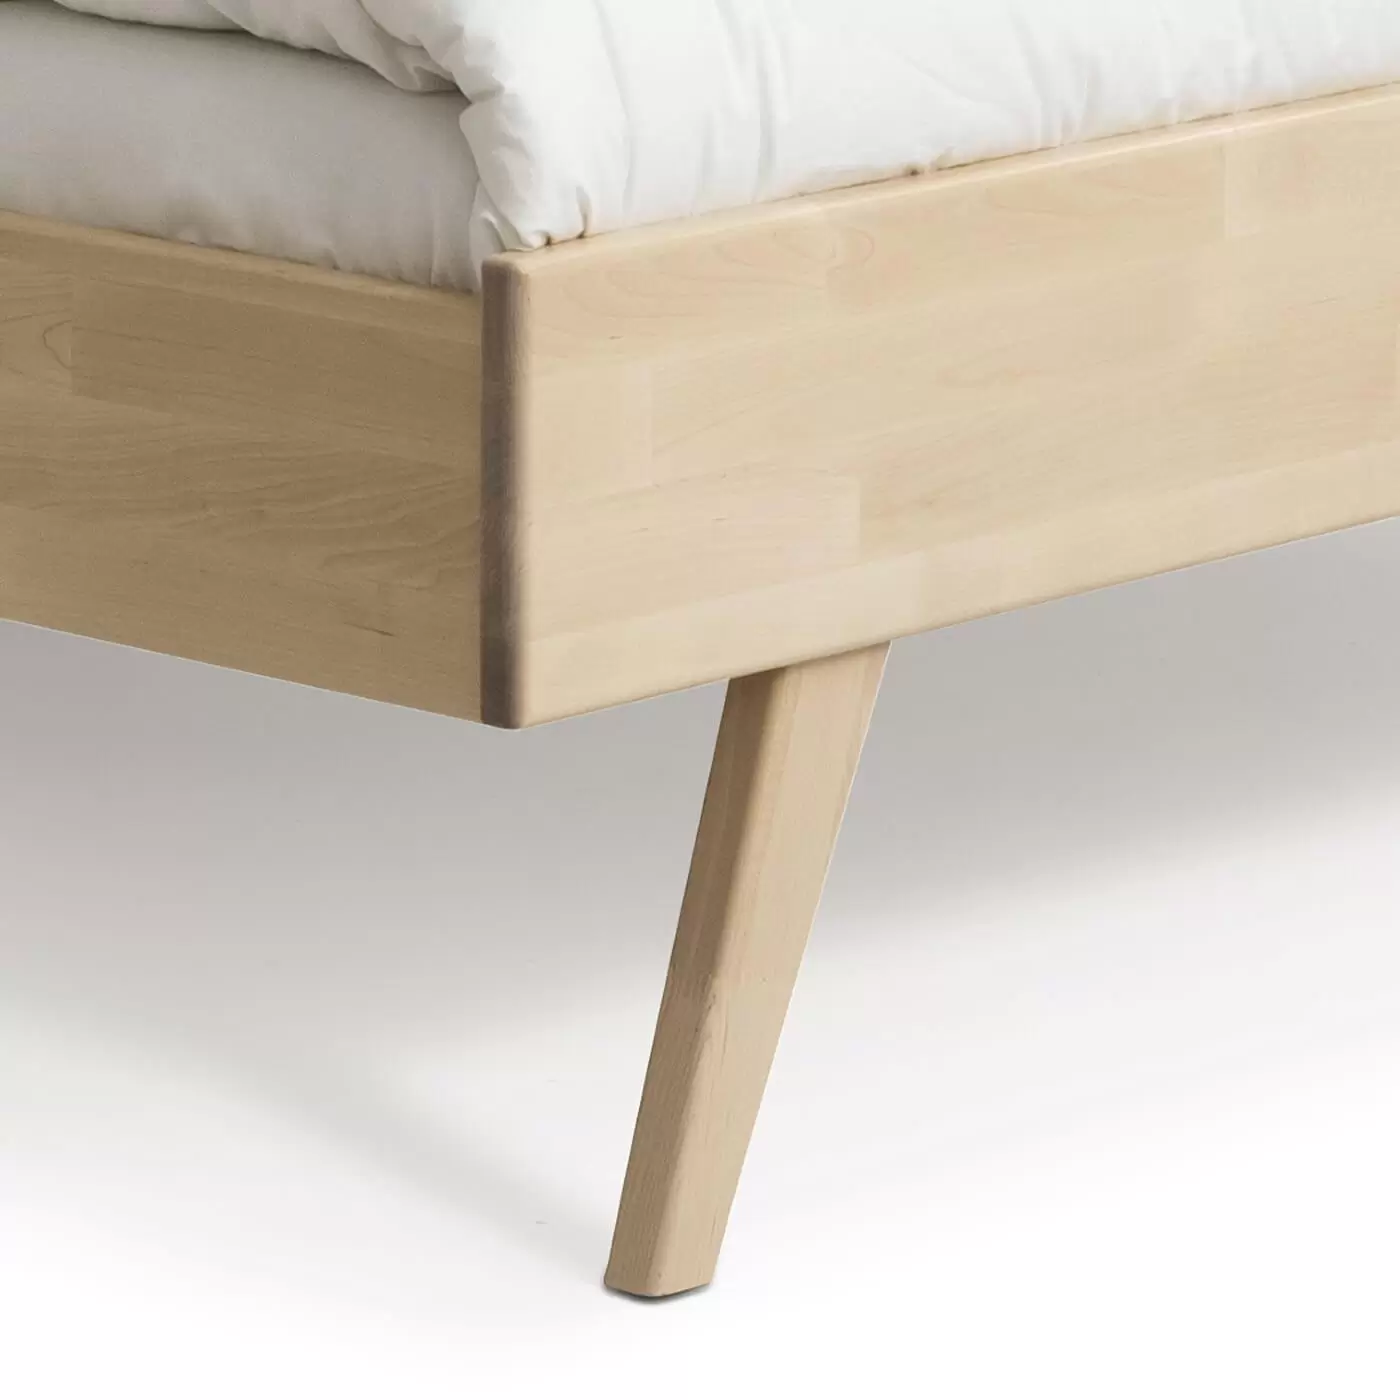 Łóżko drewniane 160x200 NOTTE. Przybliżony widok wysokiej skośnej nóżki łóżka 160x200 z litego drewna brzozy skandynawskiej. Nowoczesny design